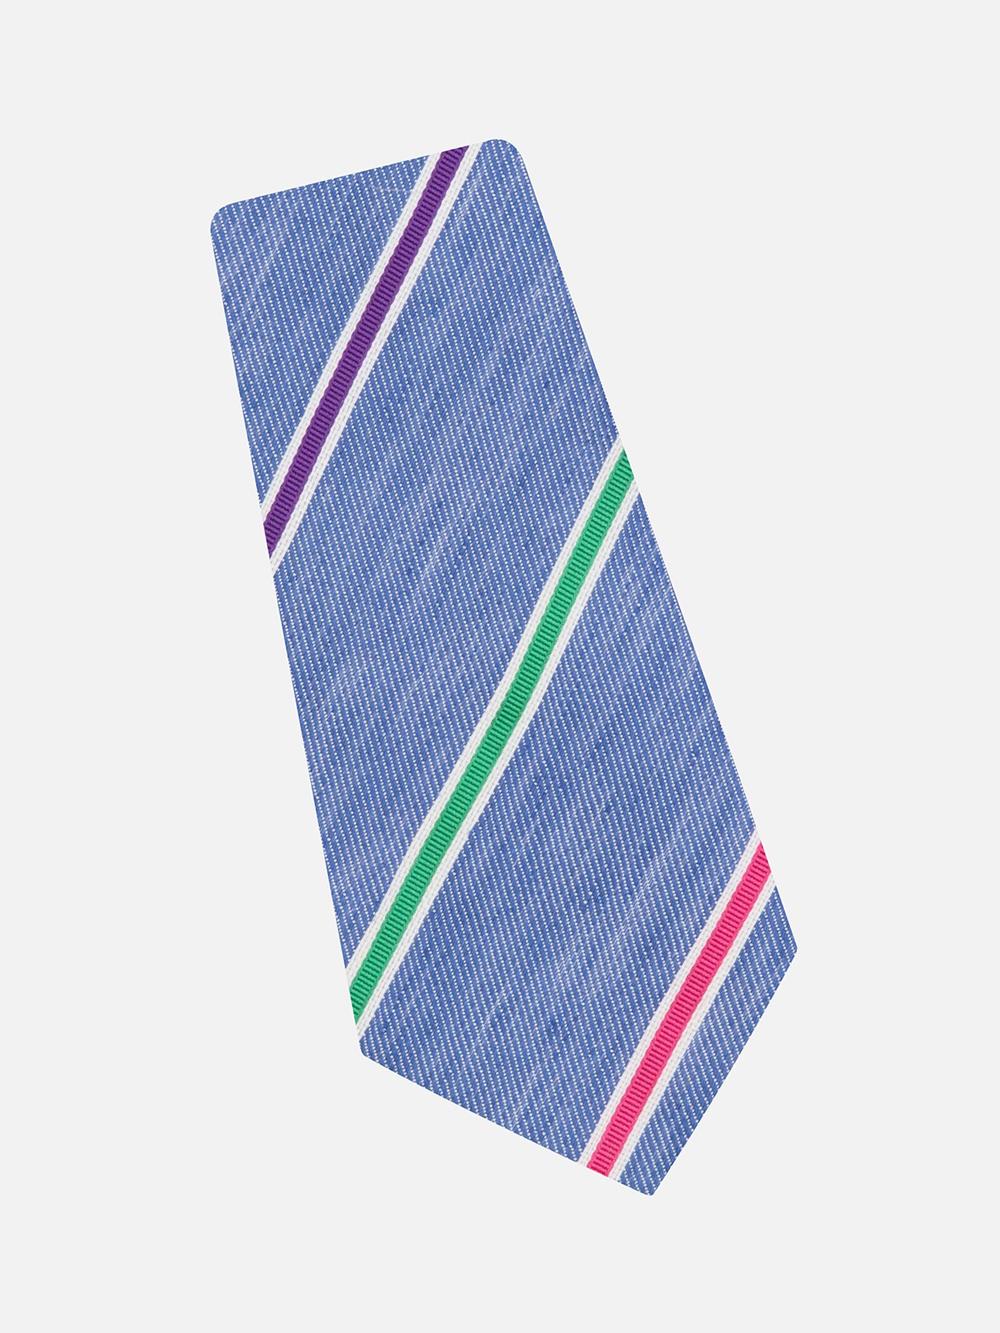 Multicolored Striped Silk Tie and Linen Tie with Multicolored Stripes